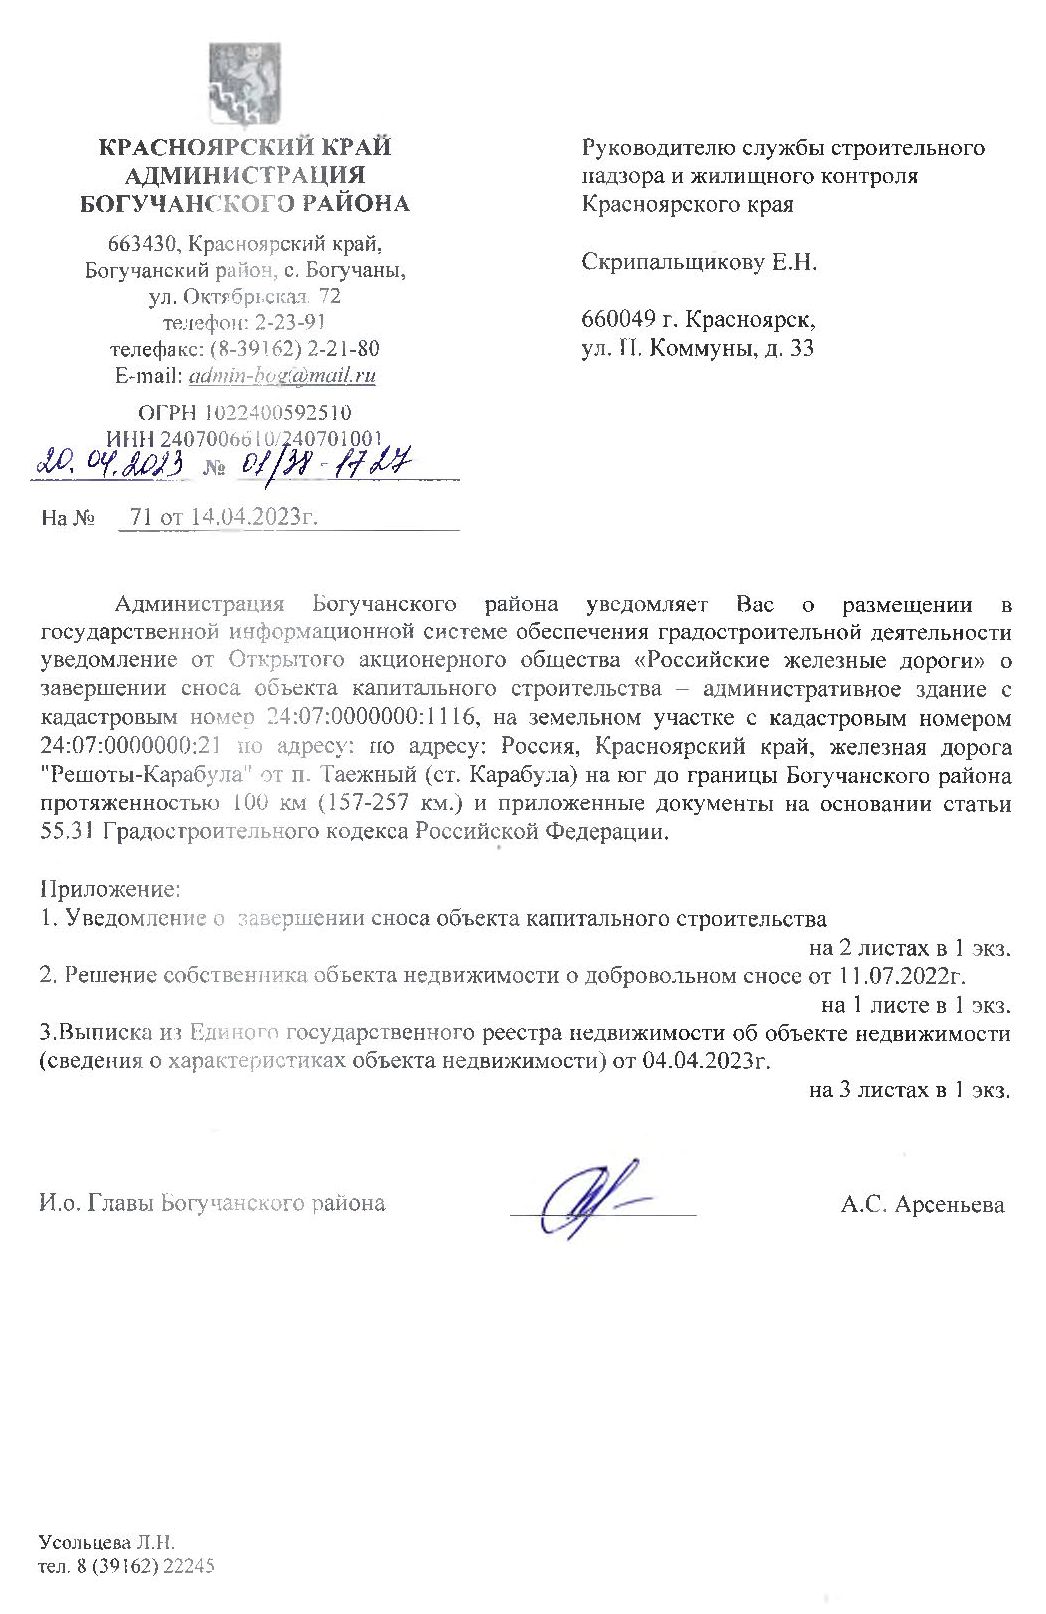 Уведомление от ОАО «Российские железные дороги» о завершении сноса объекта капитального строительства - административное здание.